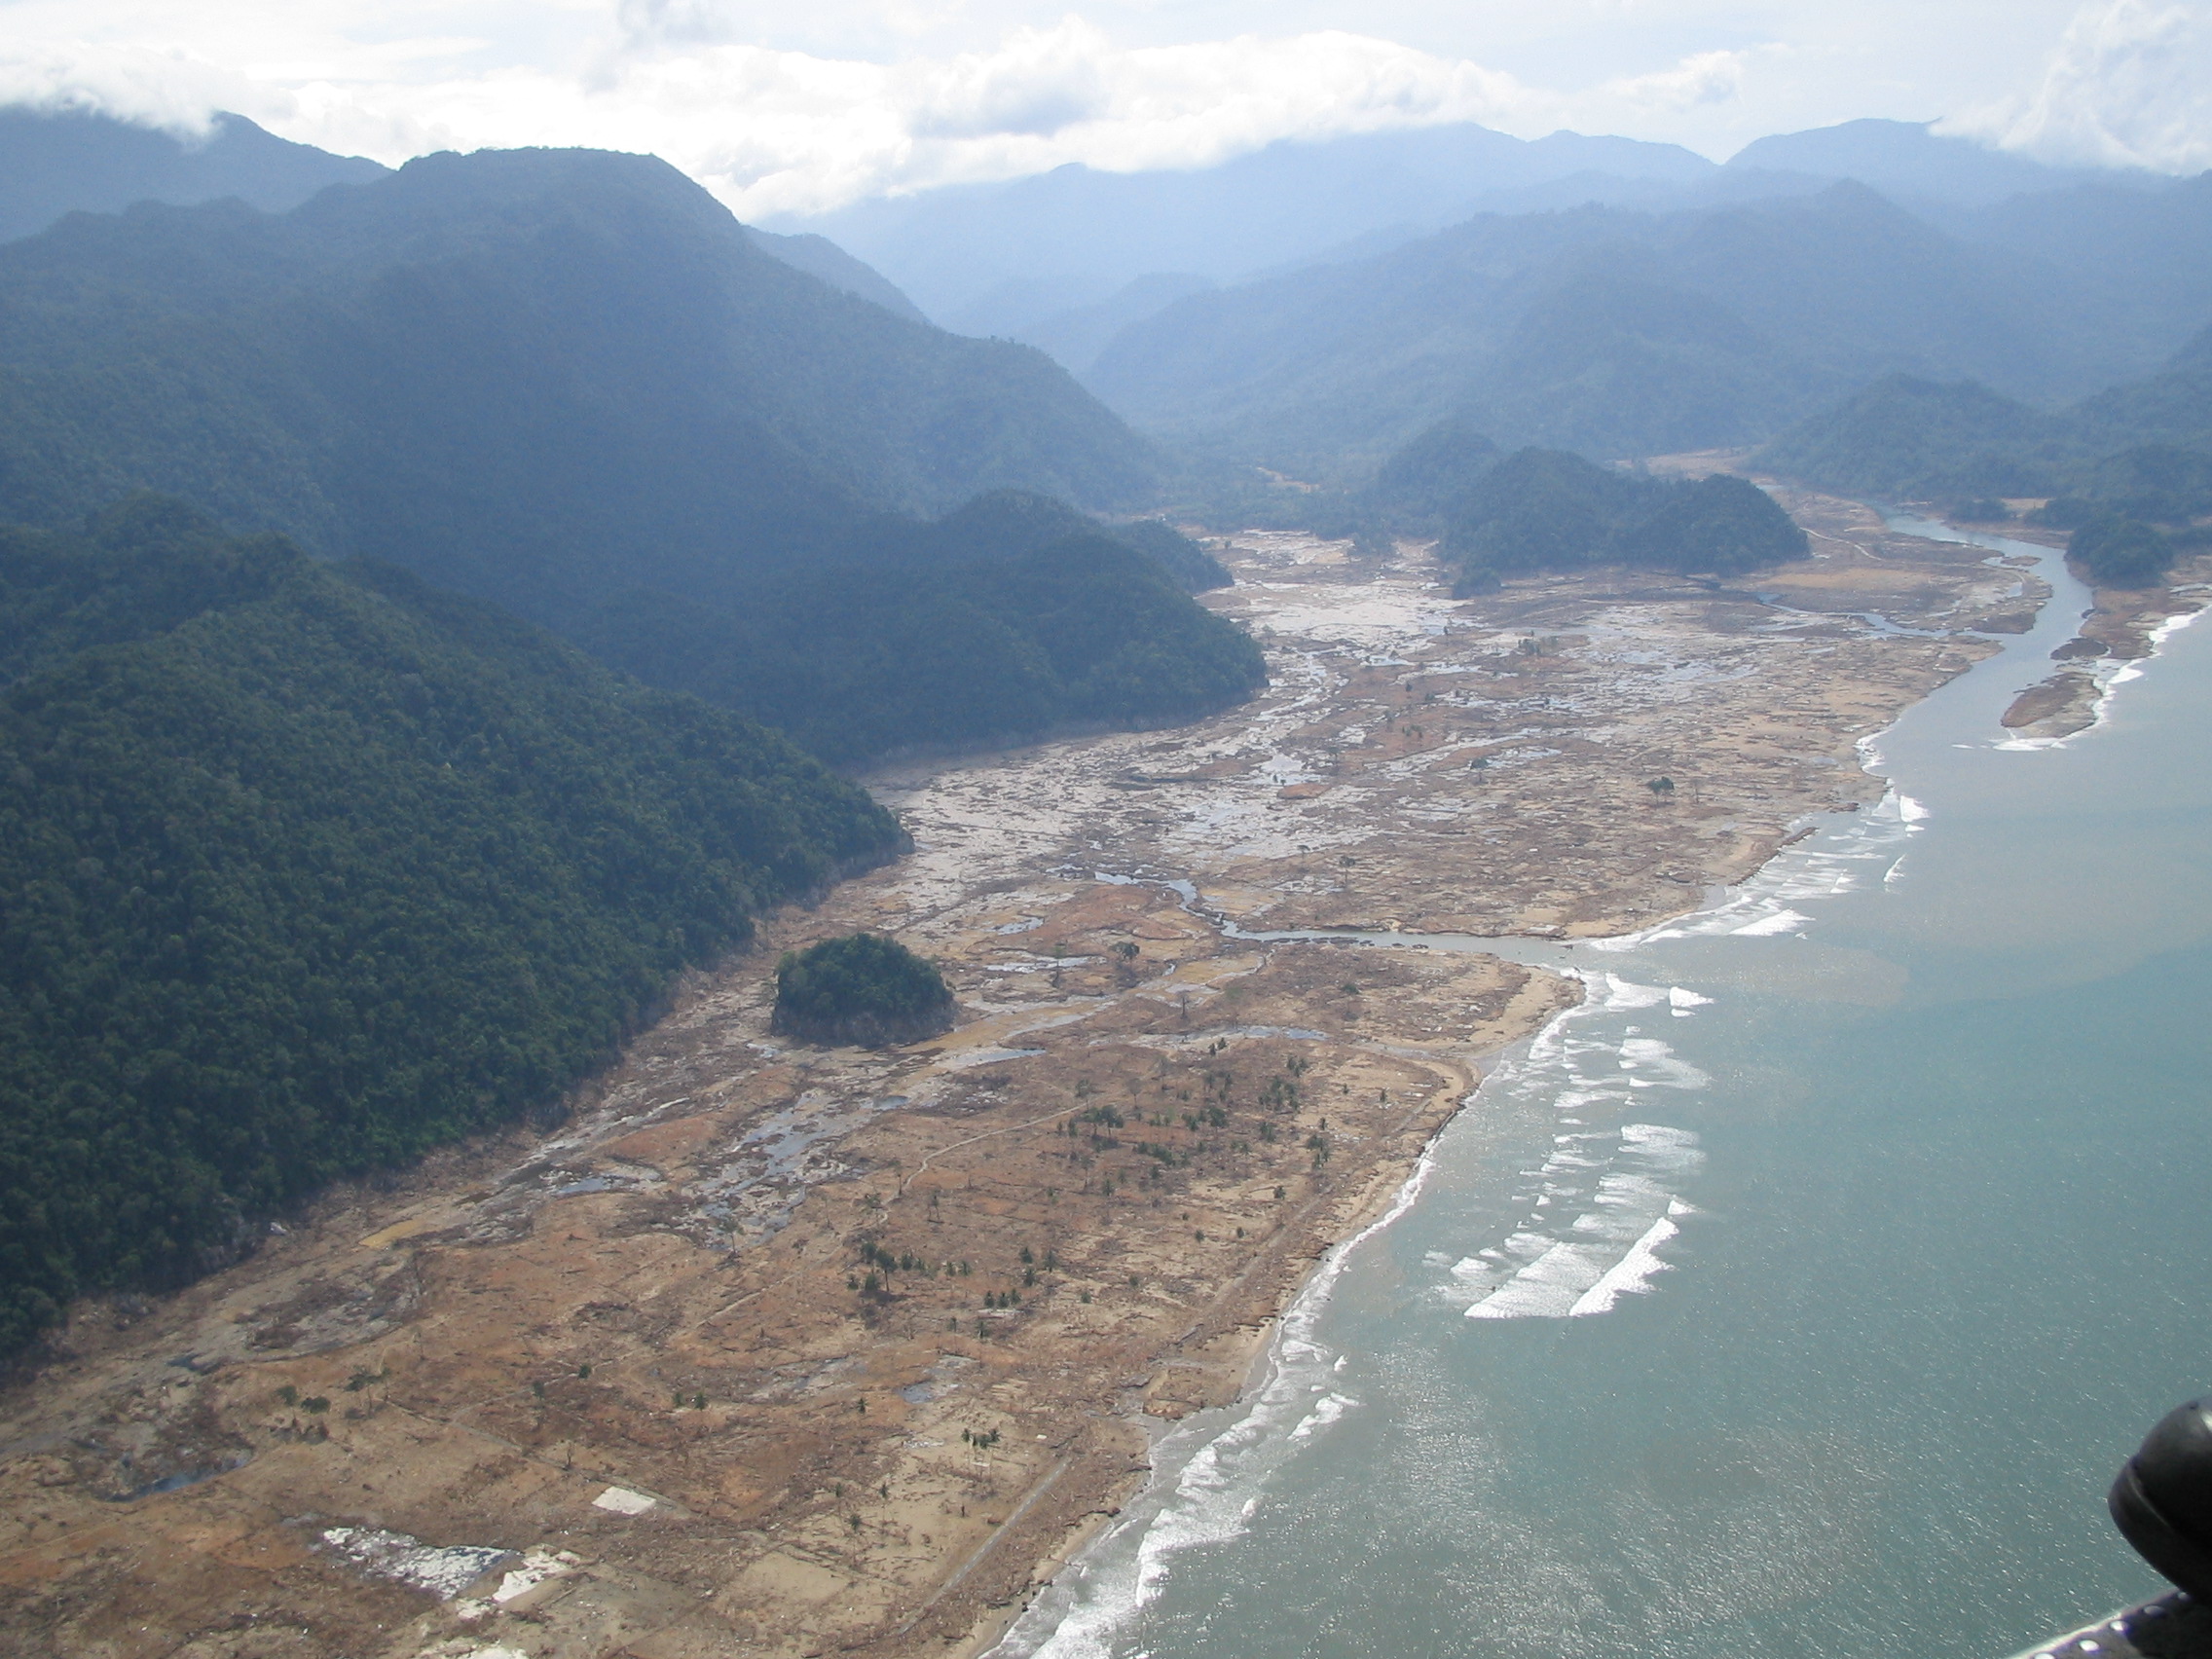 Indonéské pobřeží v oblasti Aceh na Sumatře, zasažené tsunami v prosinci 2004. Ani tato novodobá katastrofa se zdaleka neblížila projevům impaktní tsunami, která zdevastovala pobřeží Severní Ameriky až do hloubky desítek kilometrů. Kredit: AusAID, Wi